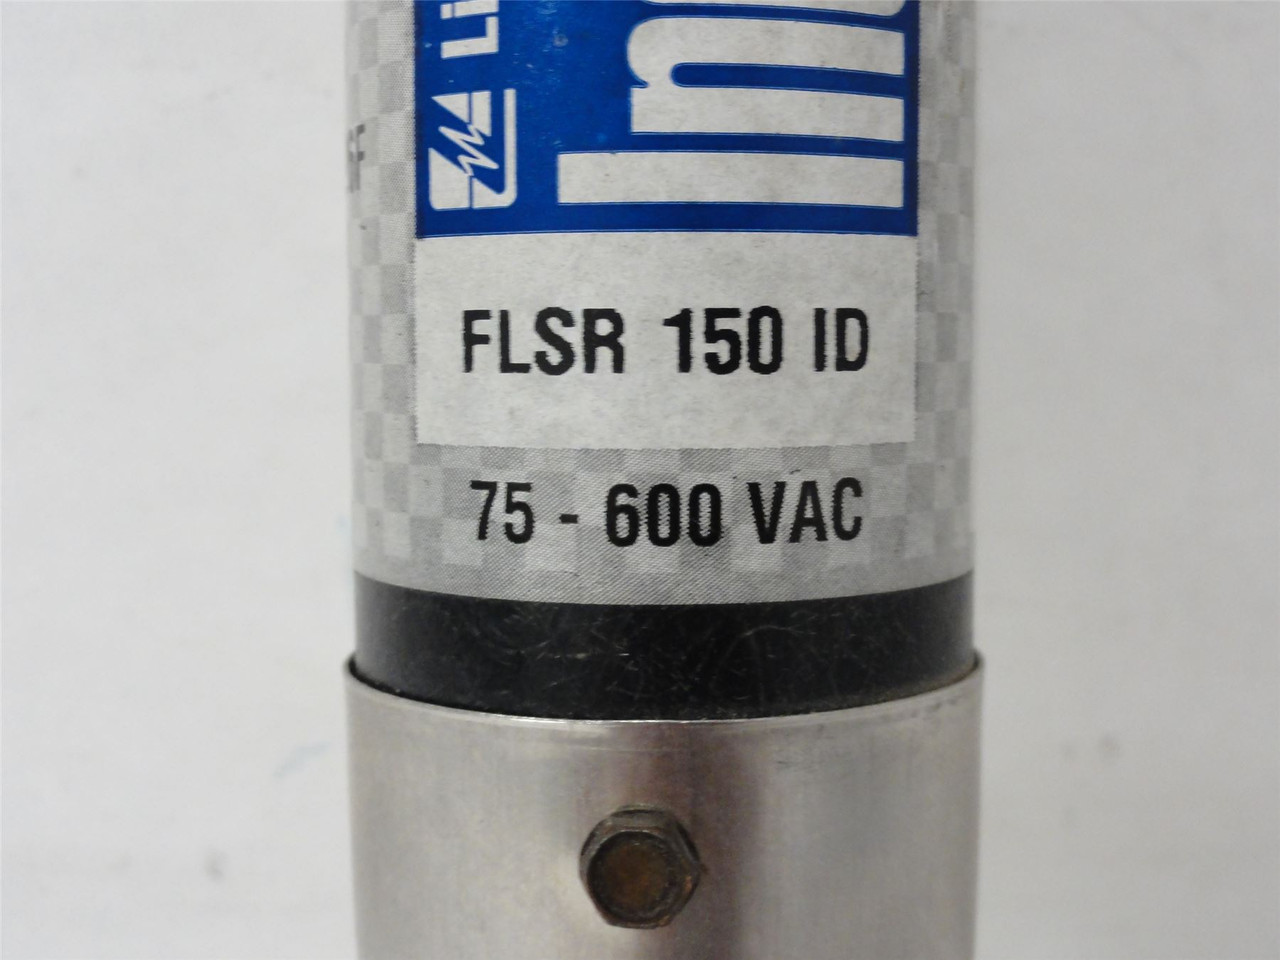 Littelfuse FLSR 150 ID; Fuse; 150A; 75-600VAC